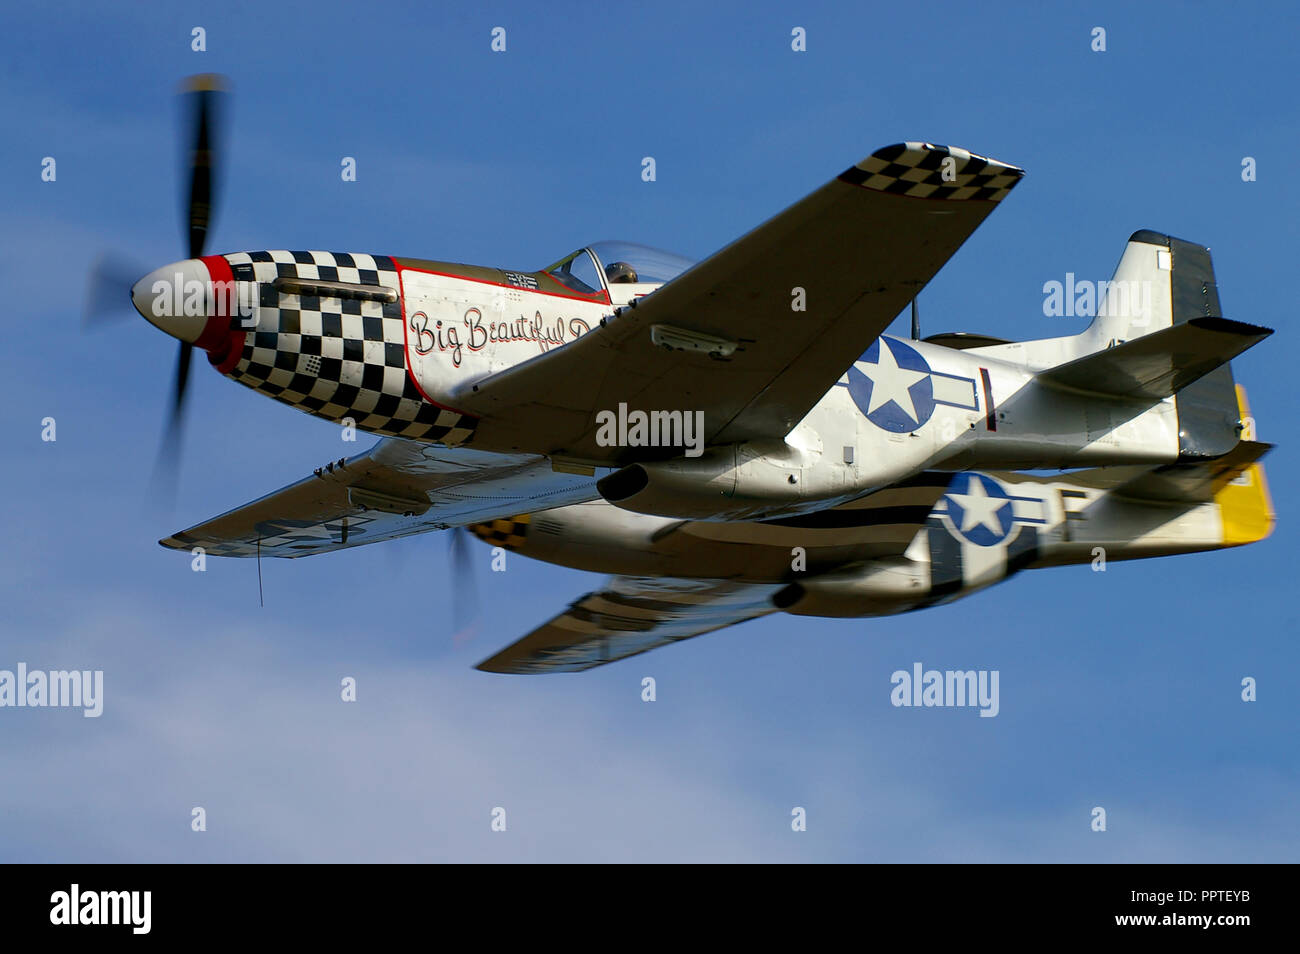 Par de North American P-51 Mustang Segunda Guerra Mundial aviones volando en el cielo azul. Segunda Guerra Mundial del avión de la Fuerza Aérea del Ejército de EEUU duo. Mustangs. P-51s Foto de stock